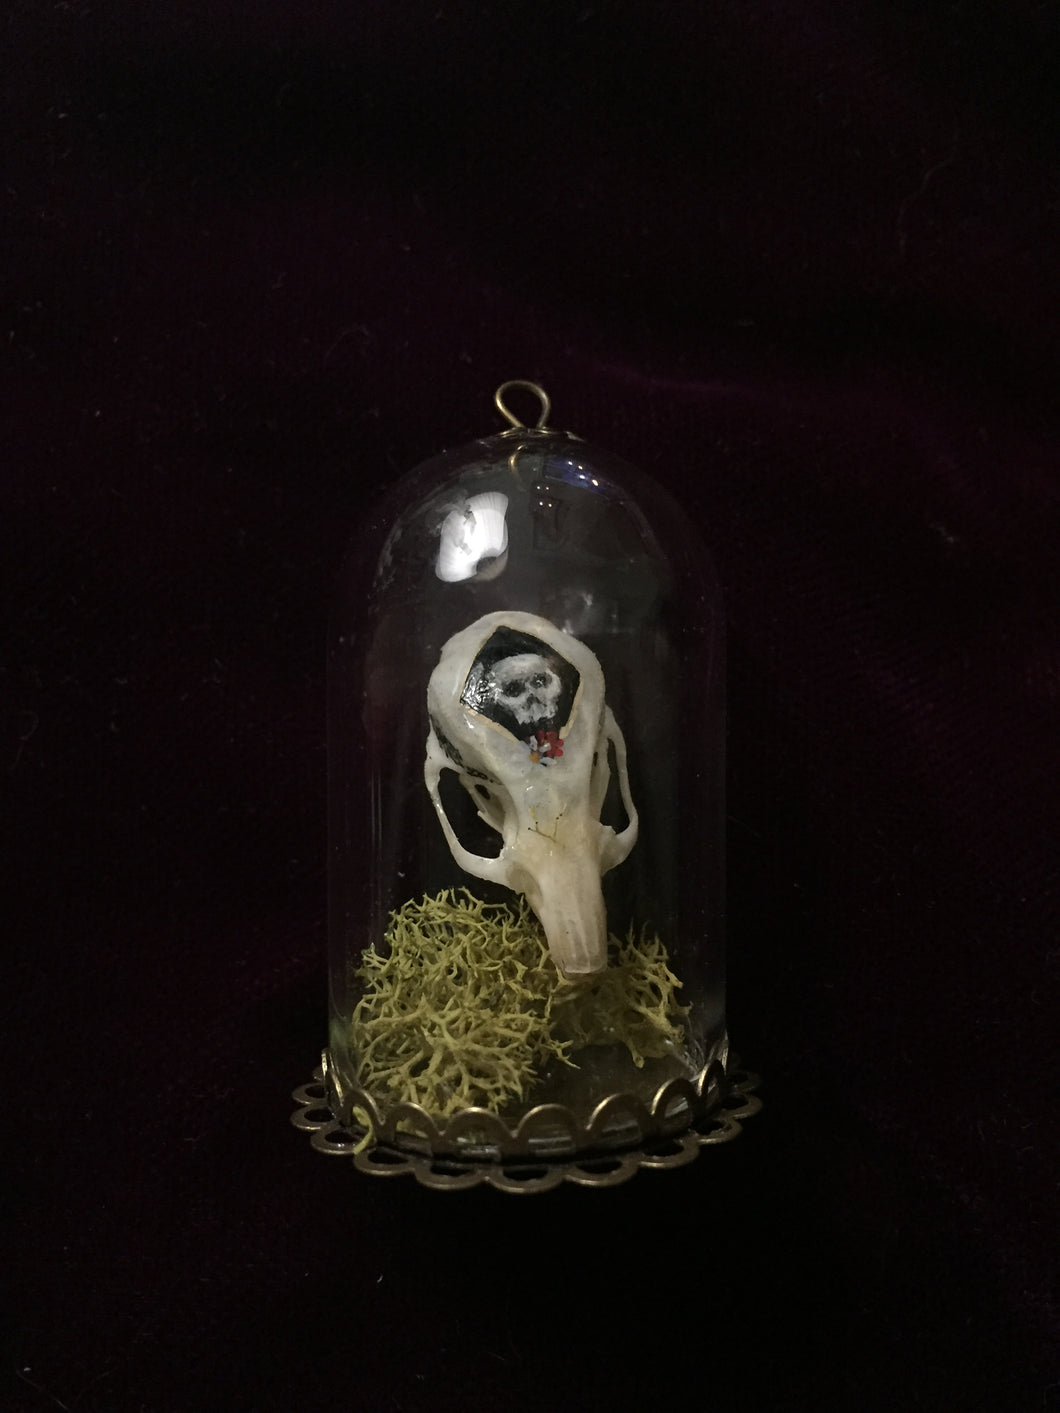 Miniature Curiosities: Painted Mouse Skull - On Sale